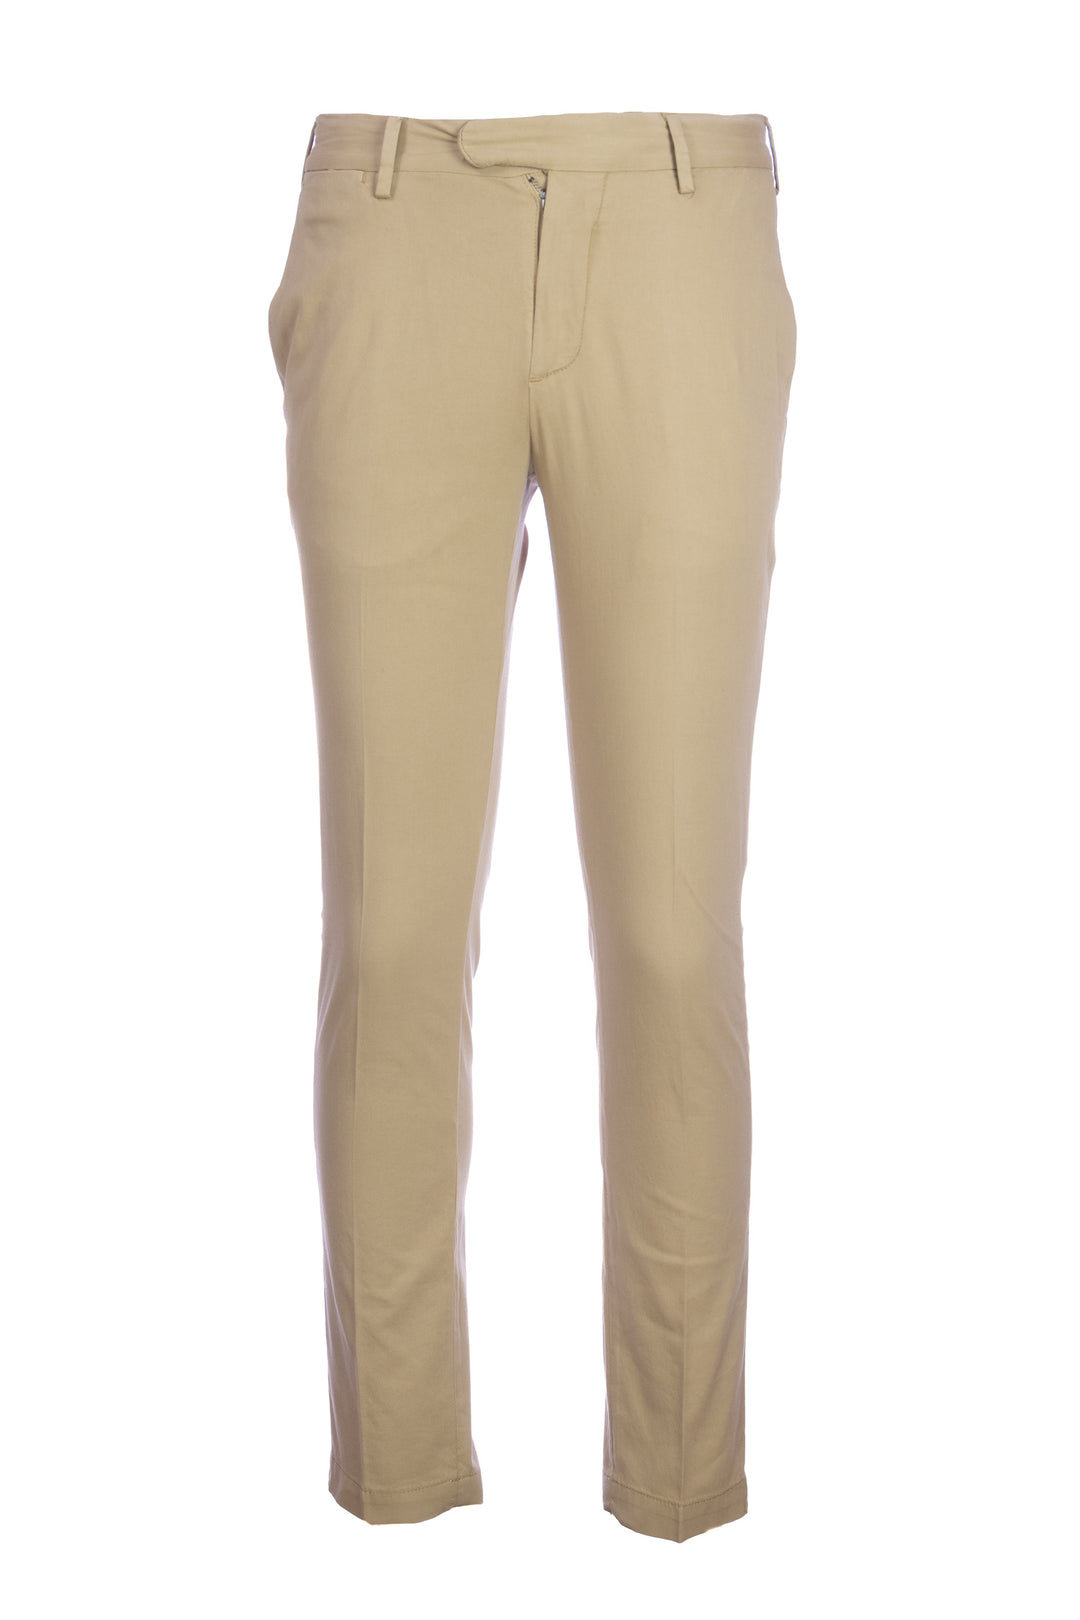 DEVORE Pantalone cammello in cotone stretch con vita elastica - Mancinelli 1954